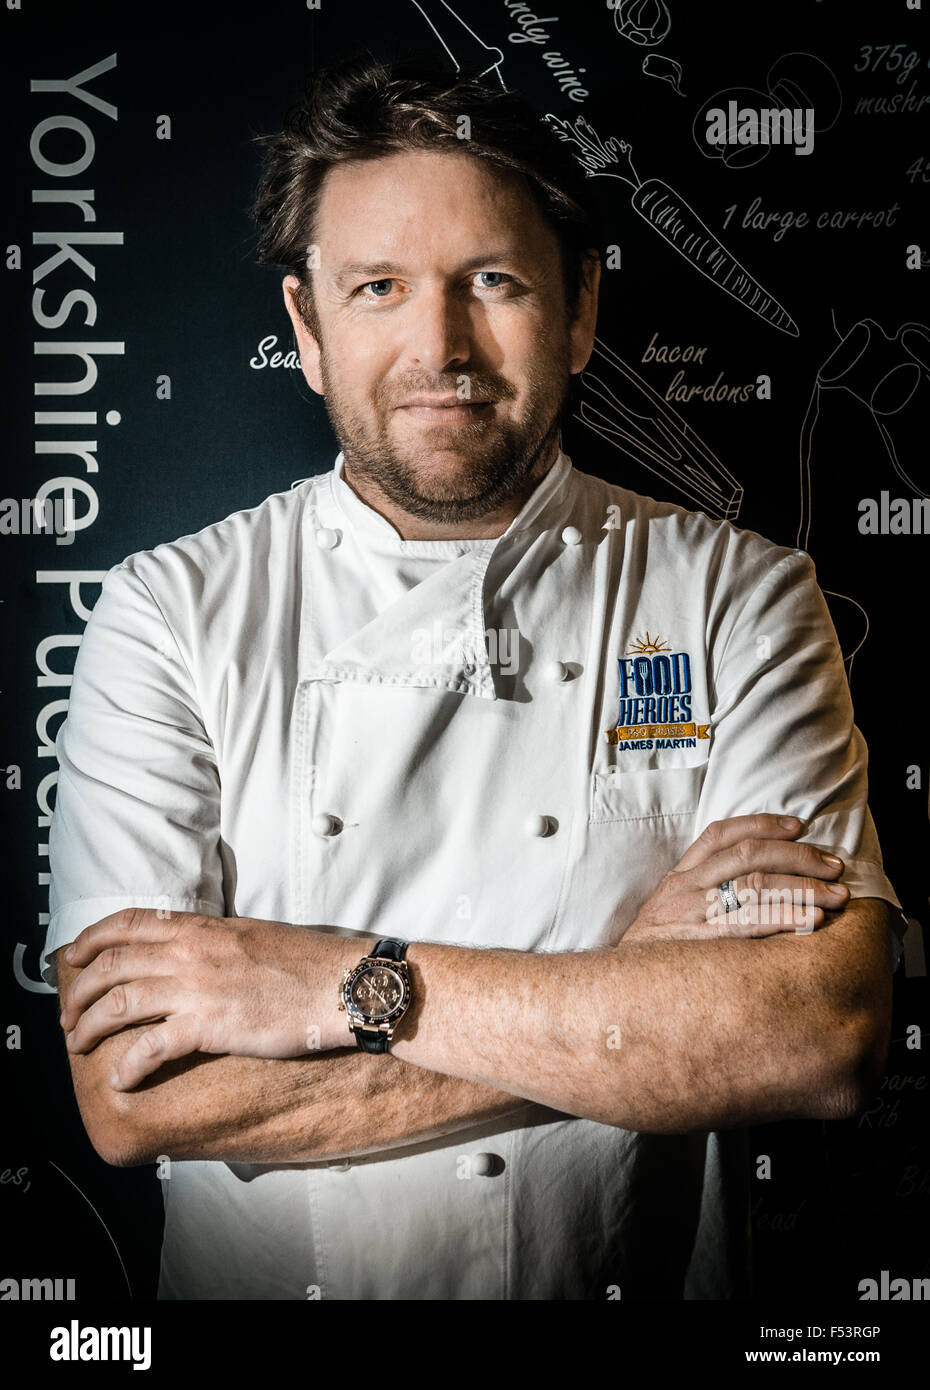 James Martin, ist eine britische Chef und Fernsehmoderator, bekannt für die Präsentation der BBC-Kochkurse-Serie Saturday Kitchen Stockfoto